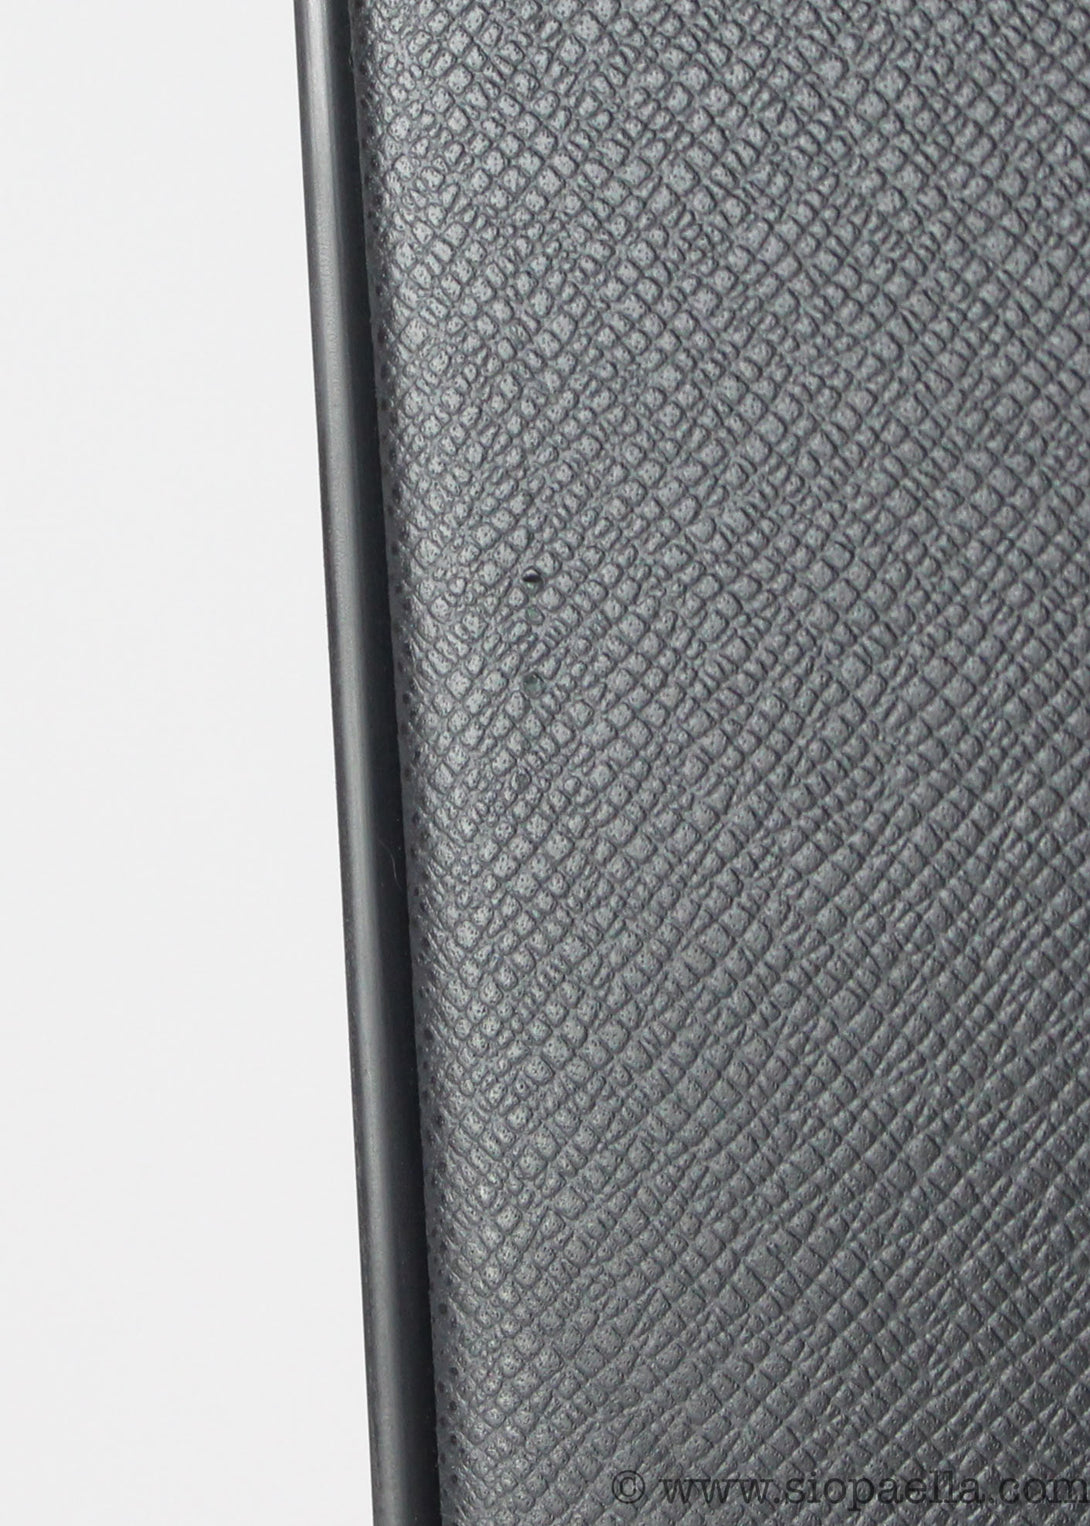 Louis Vuitton Pégase 55 Business Suitcase - Siopaella Designer Exchange